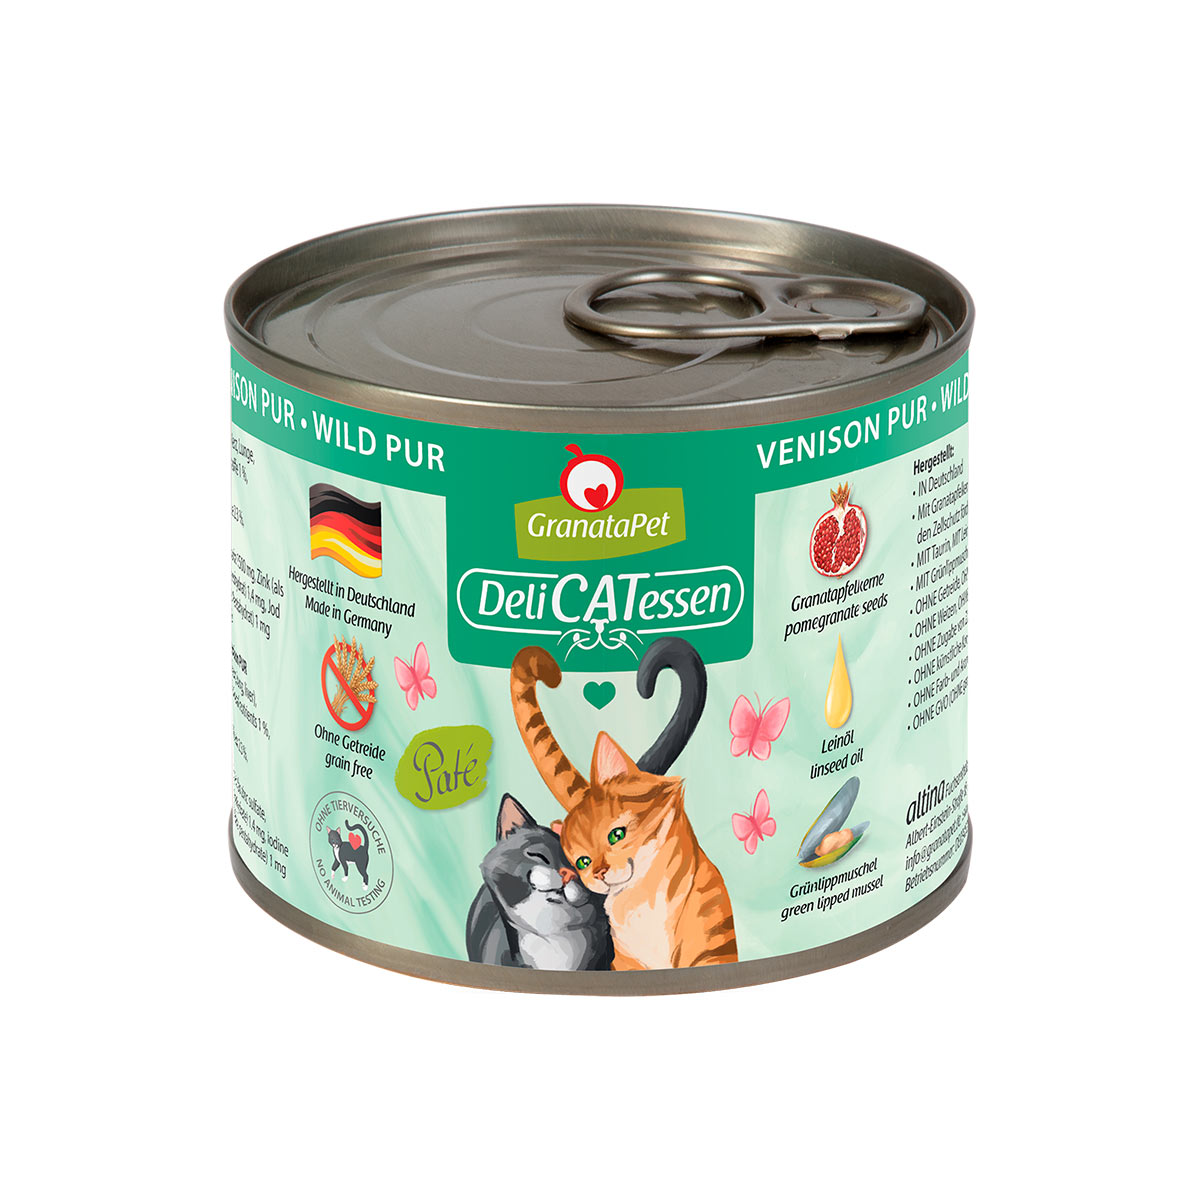 GranataPet Katze – Delicatessen Dose Wild PUR 12x200g – mit 27% Rabatt günstig kaufen